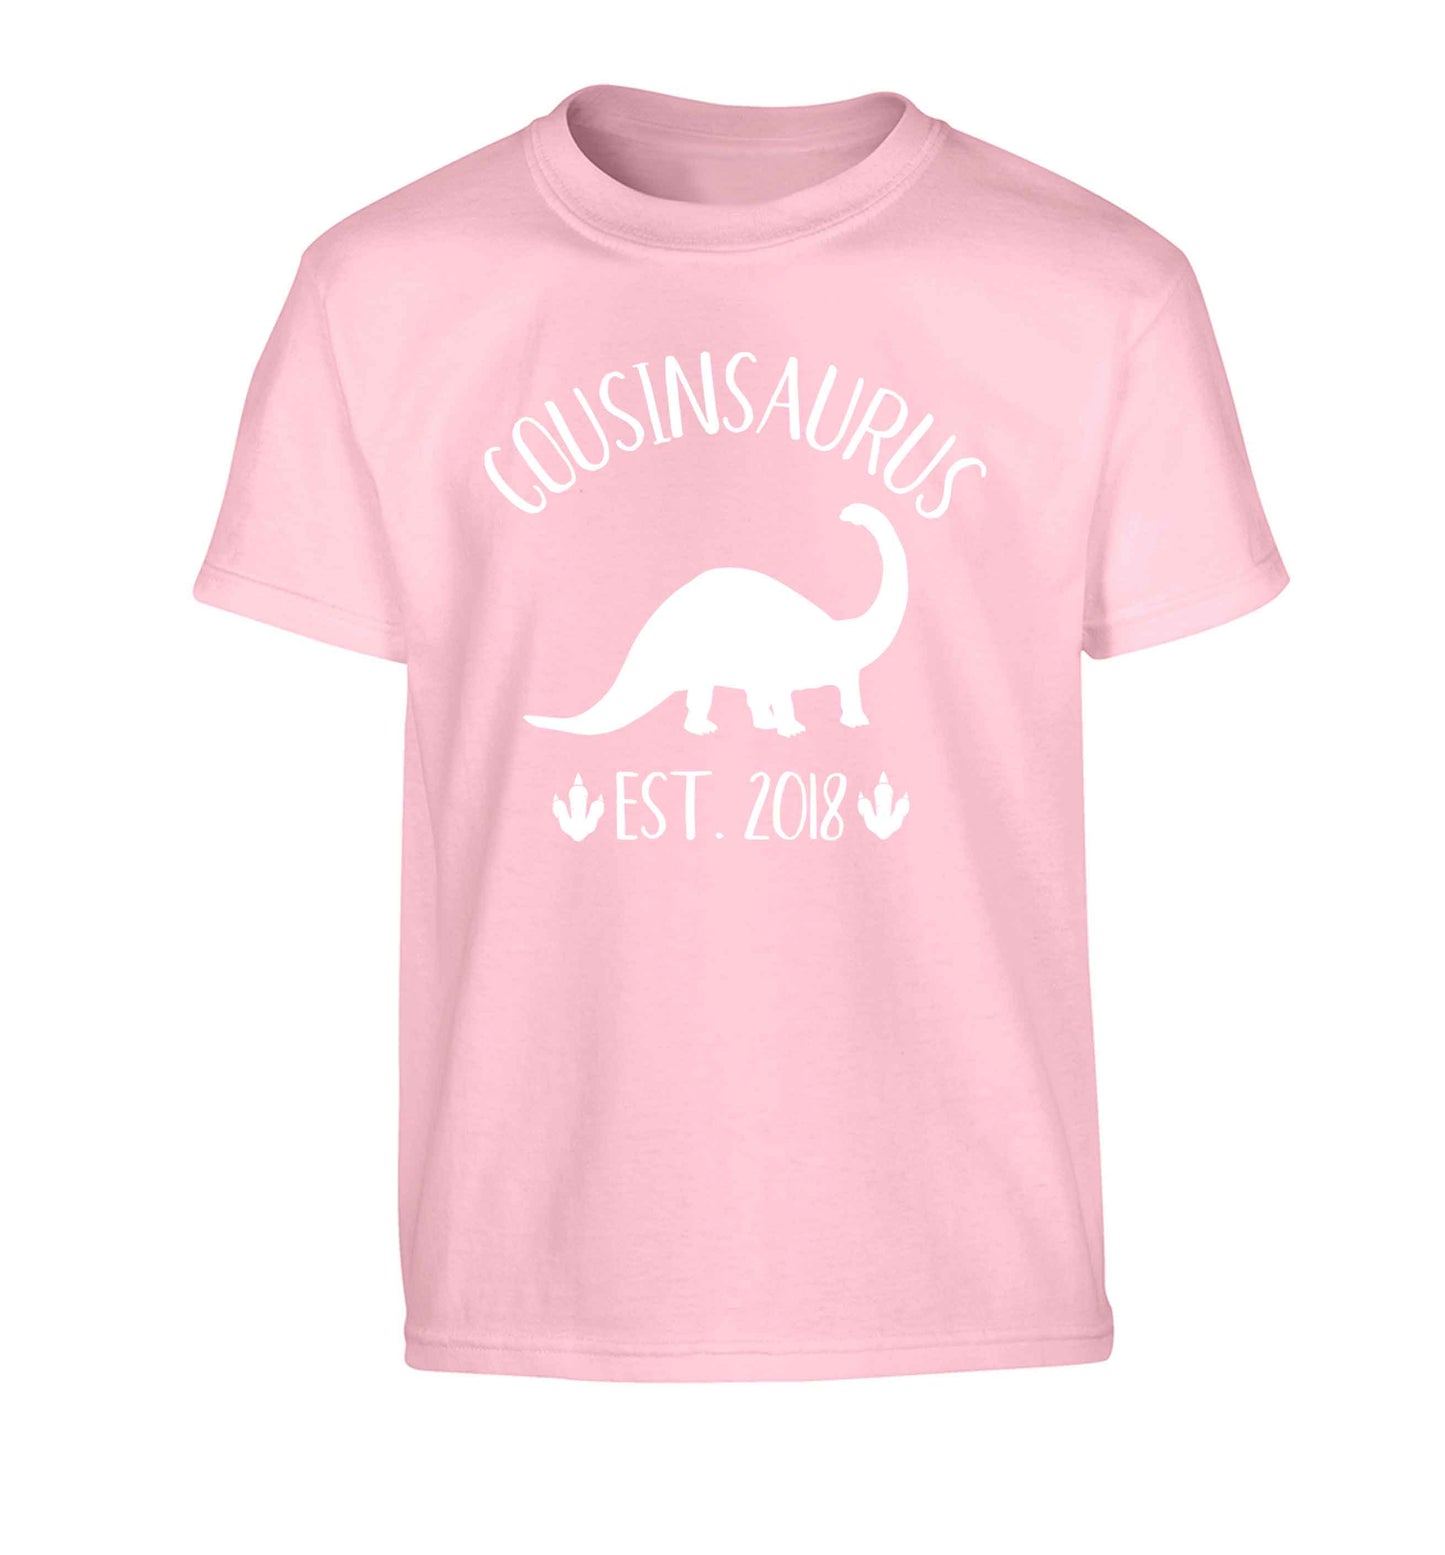 Personalised cousinsaurus since (custom date) Children's light pink Tshirt 12-13 Years